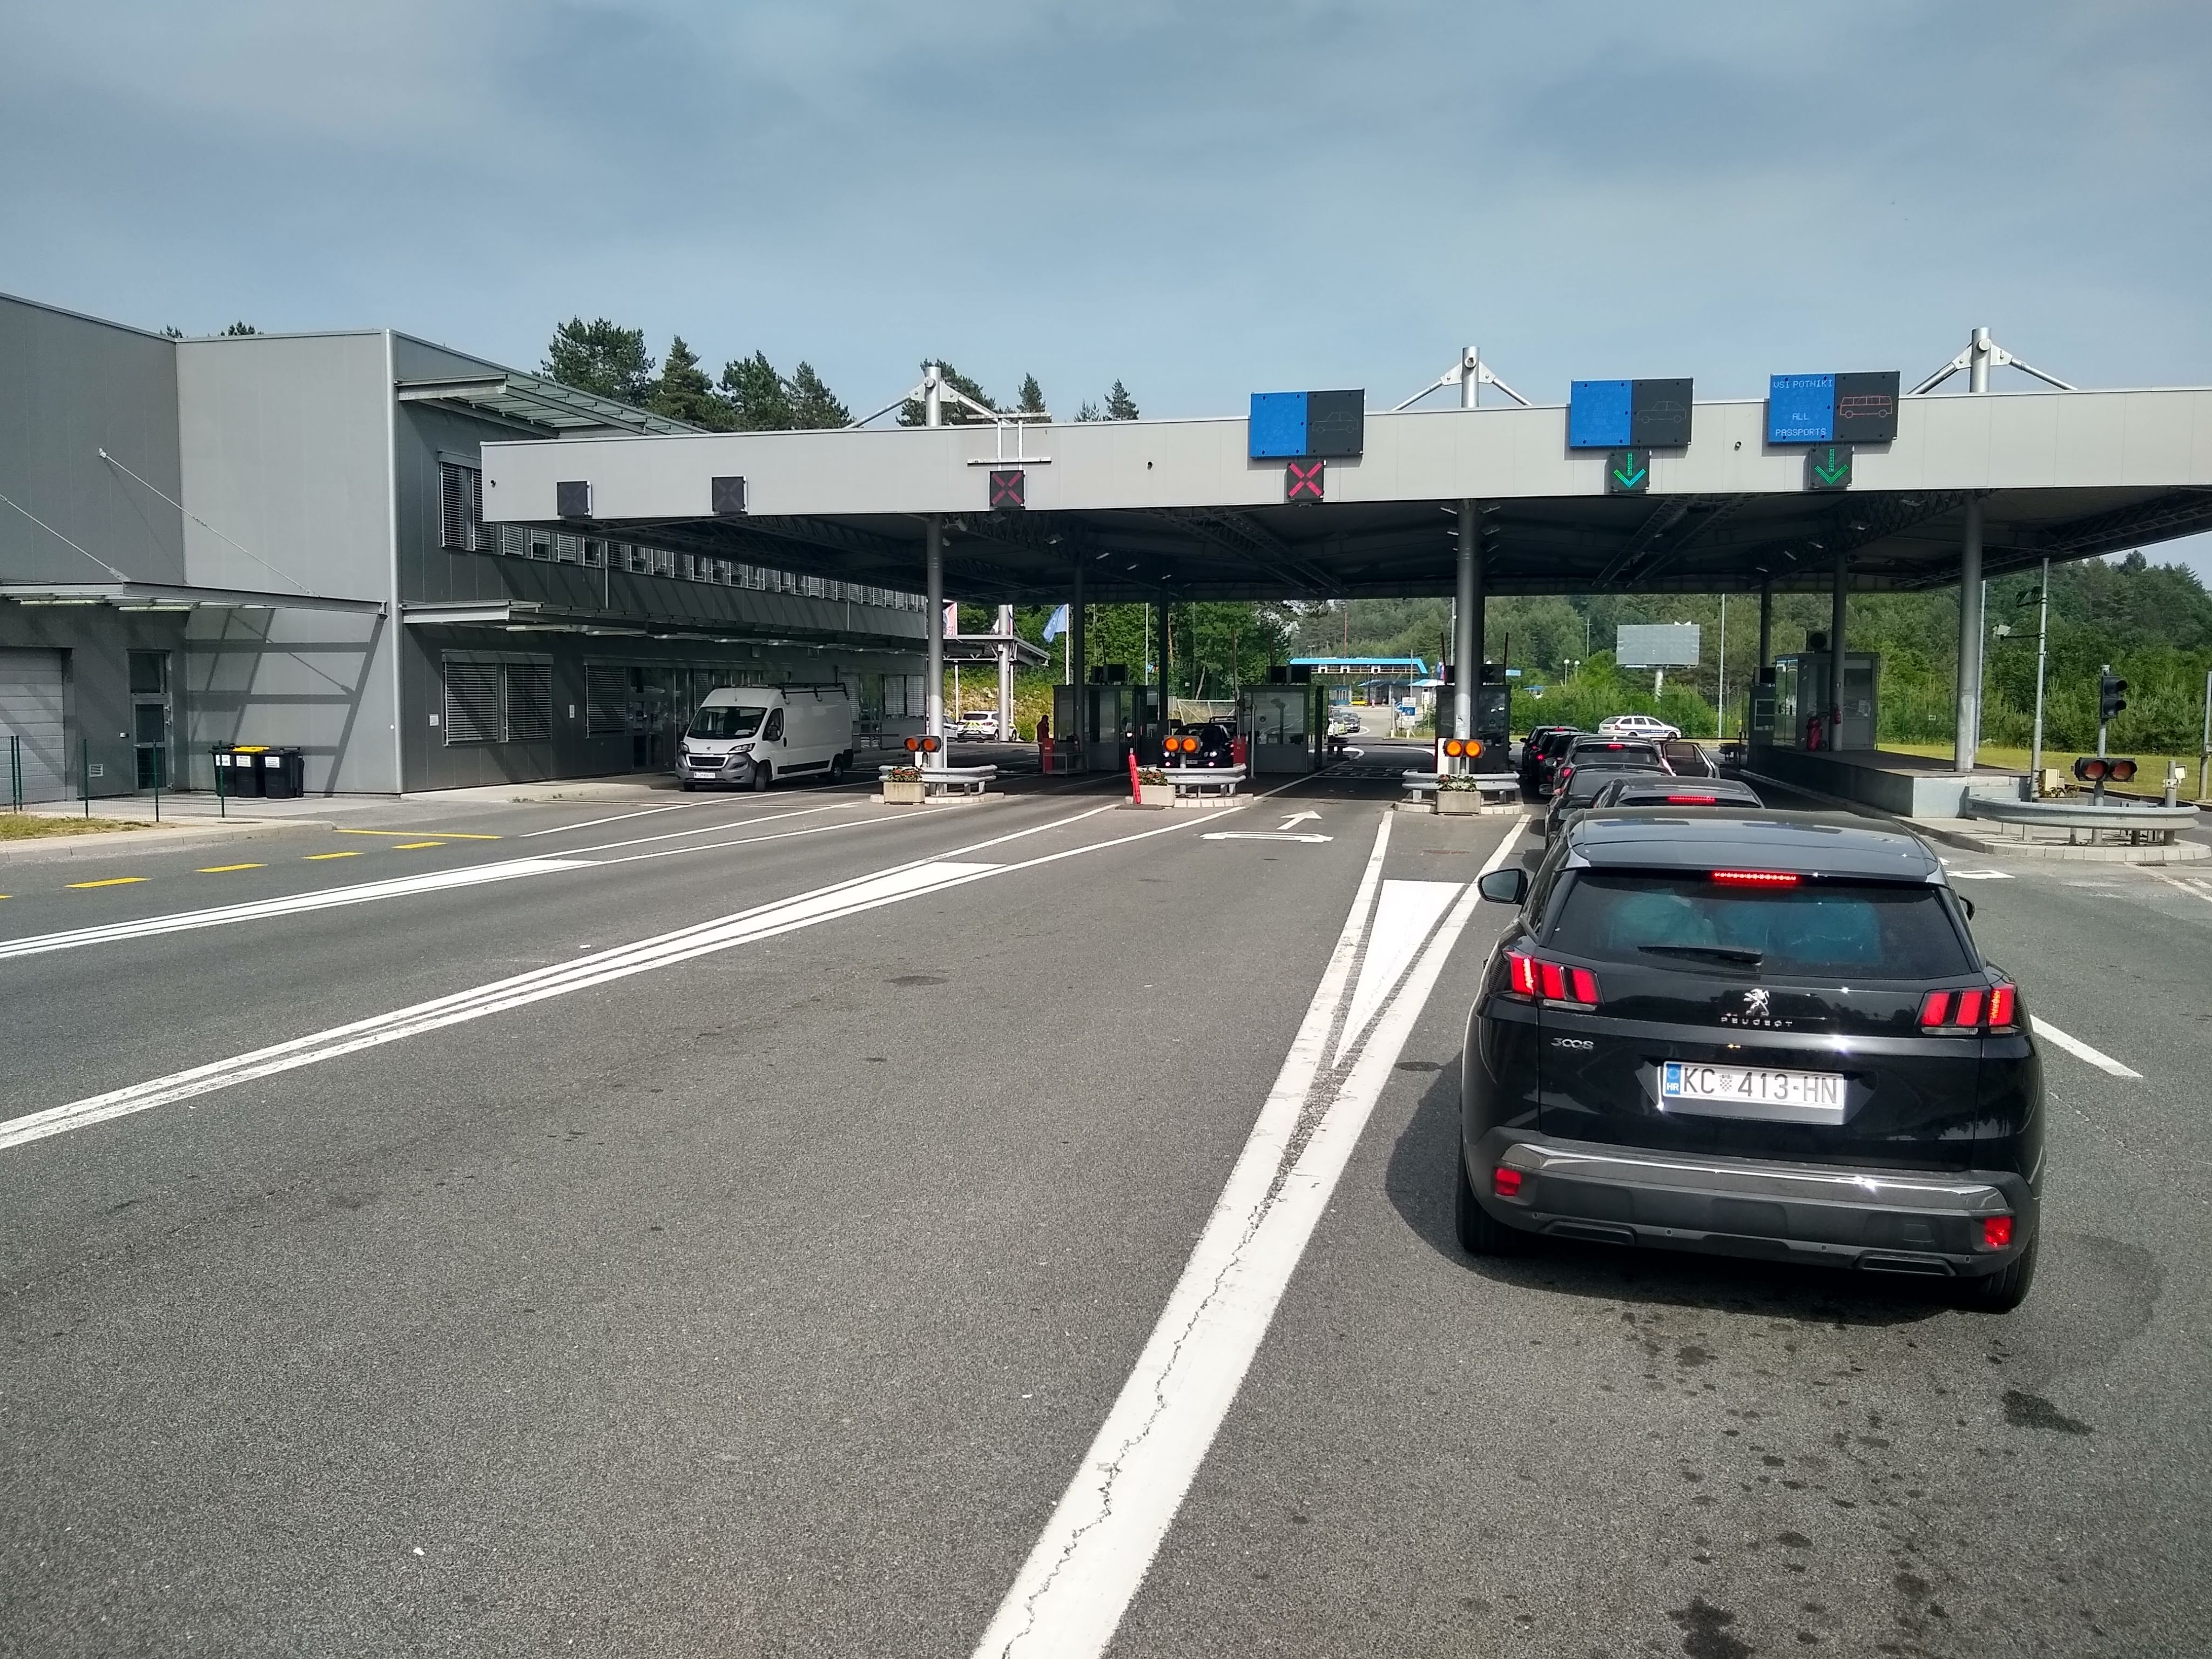 Grenzübergang von Slowenien nach Kroatien